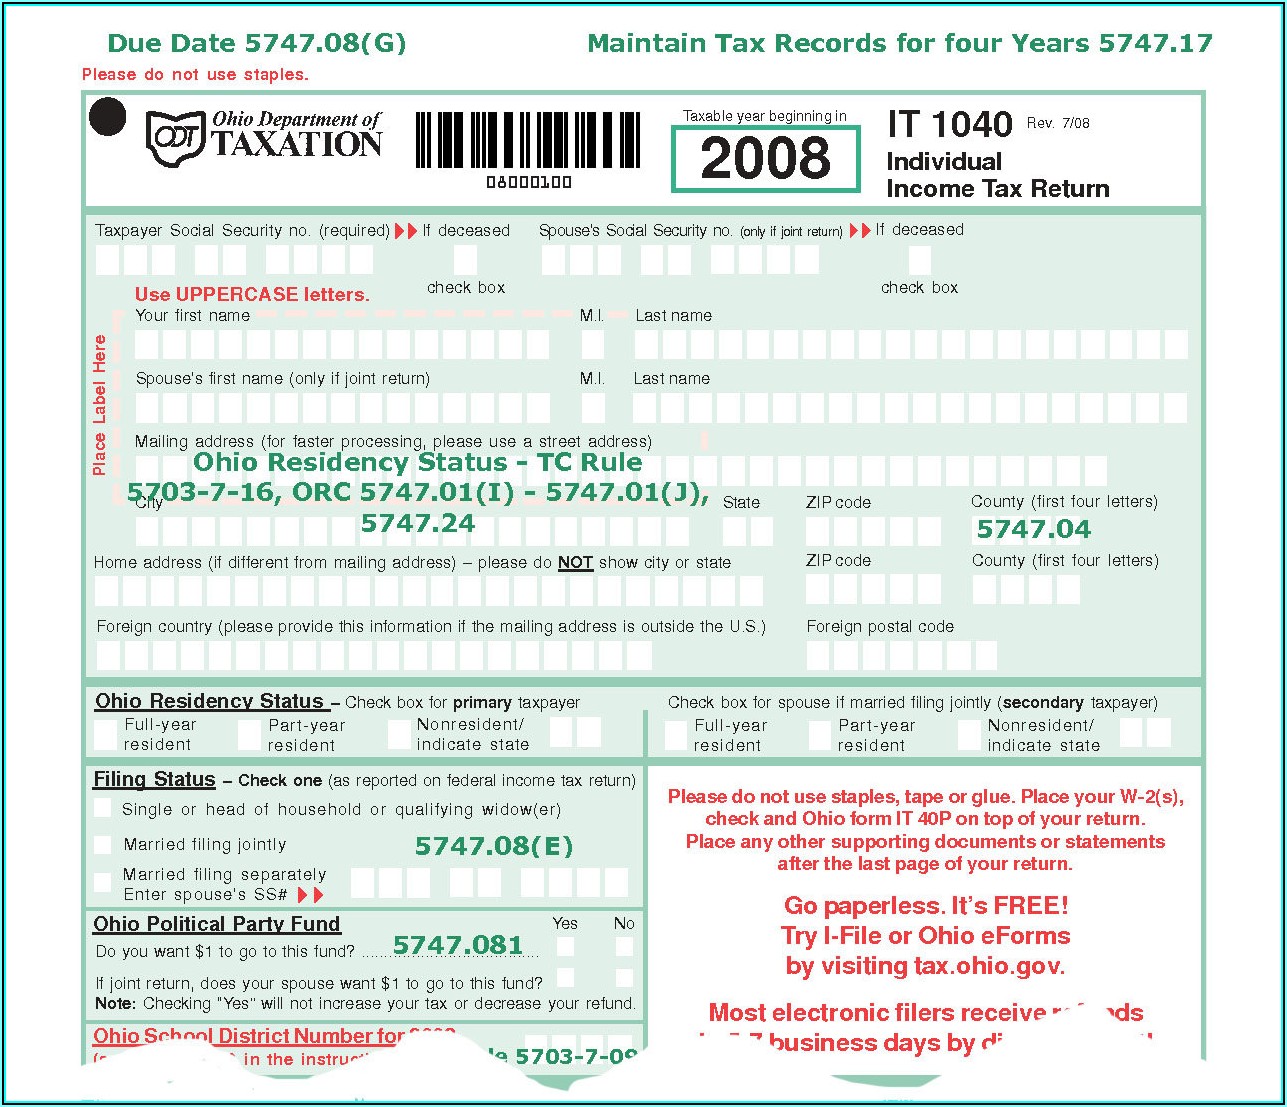 Ohio.gov Tax Forms